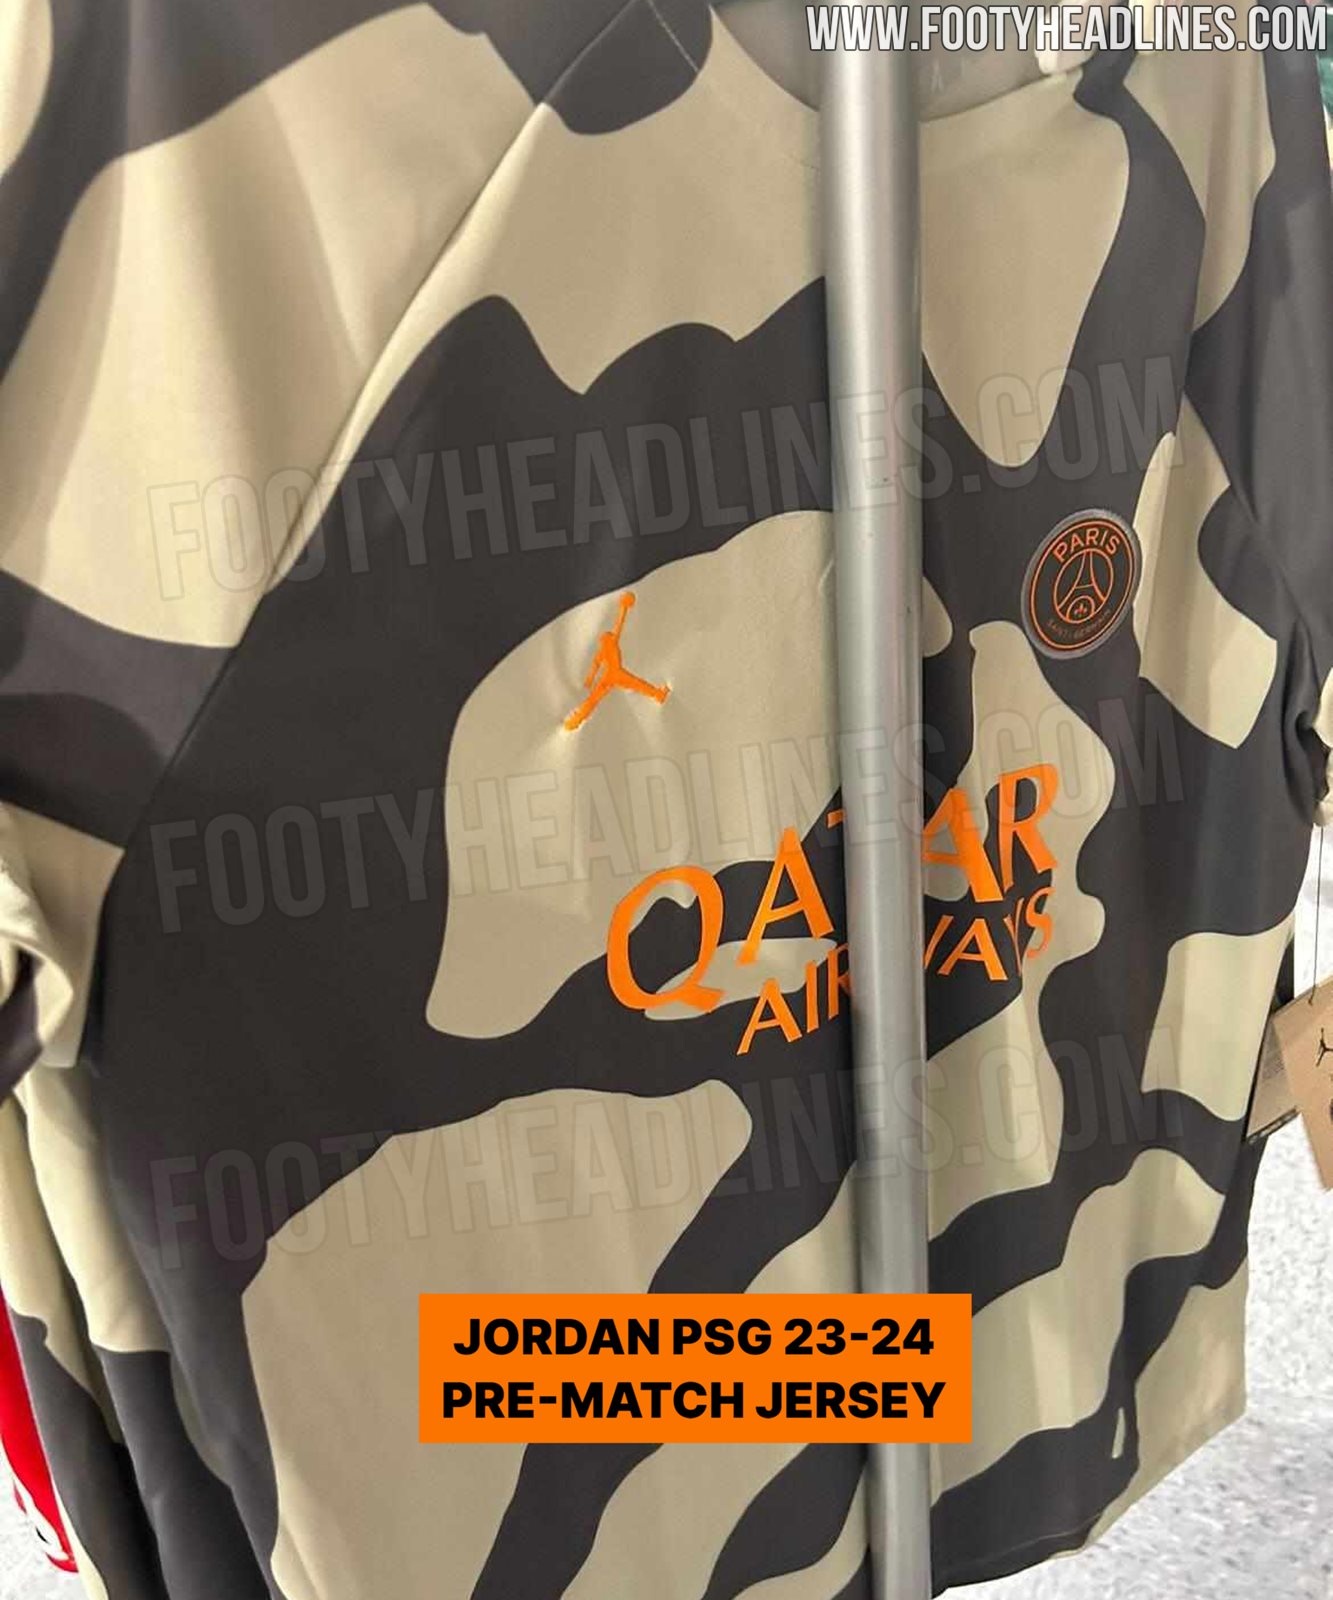 Jordan PSG 23-24 Third Kit Released - Footy Headlines